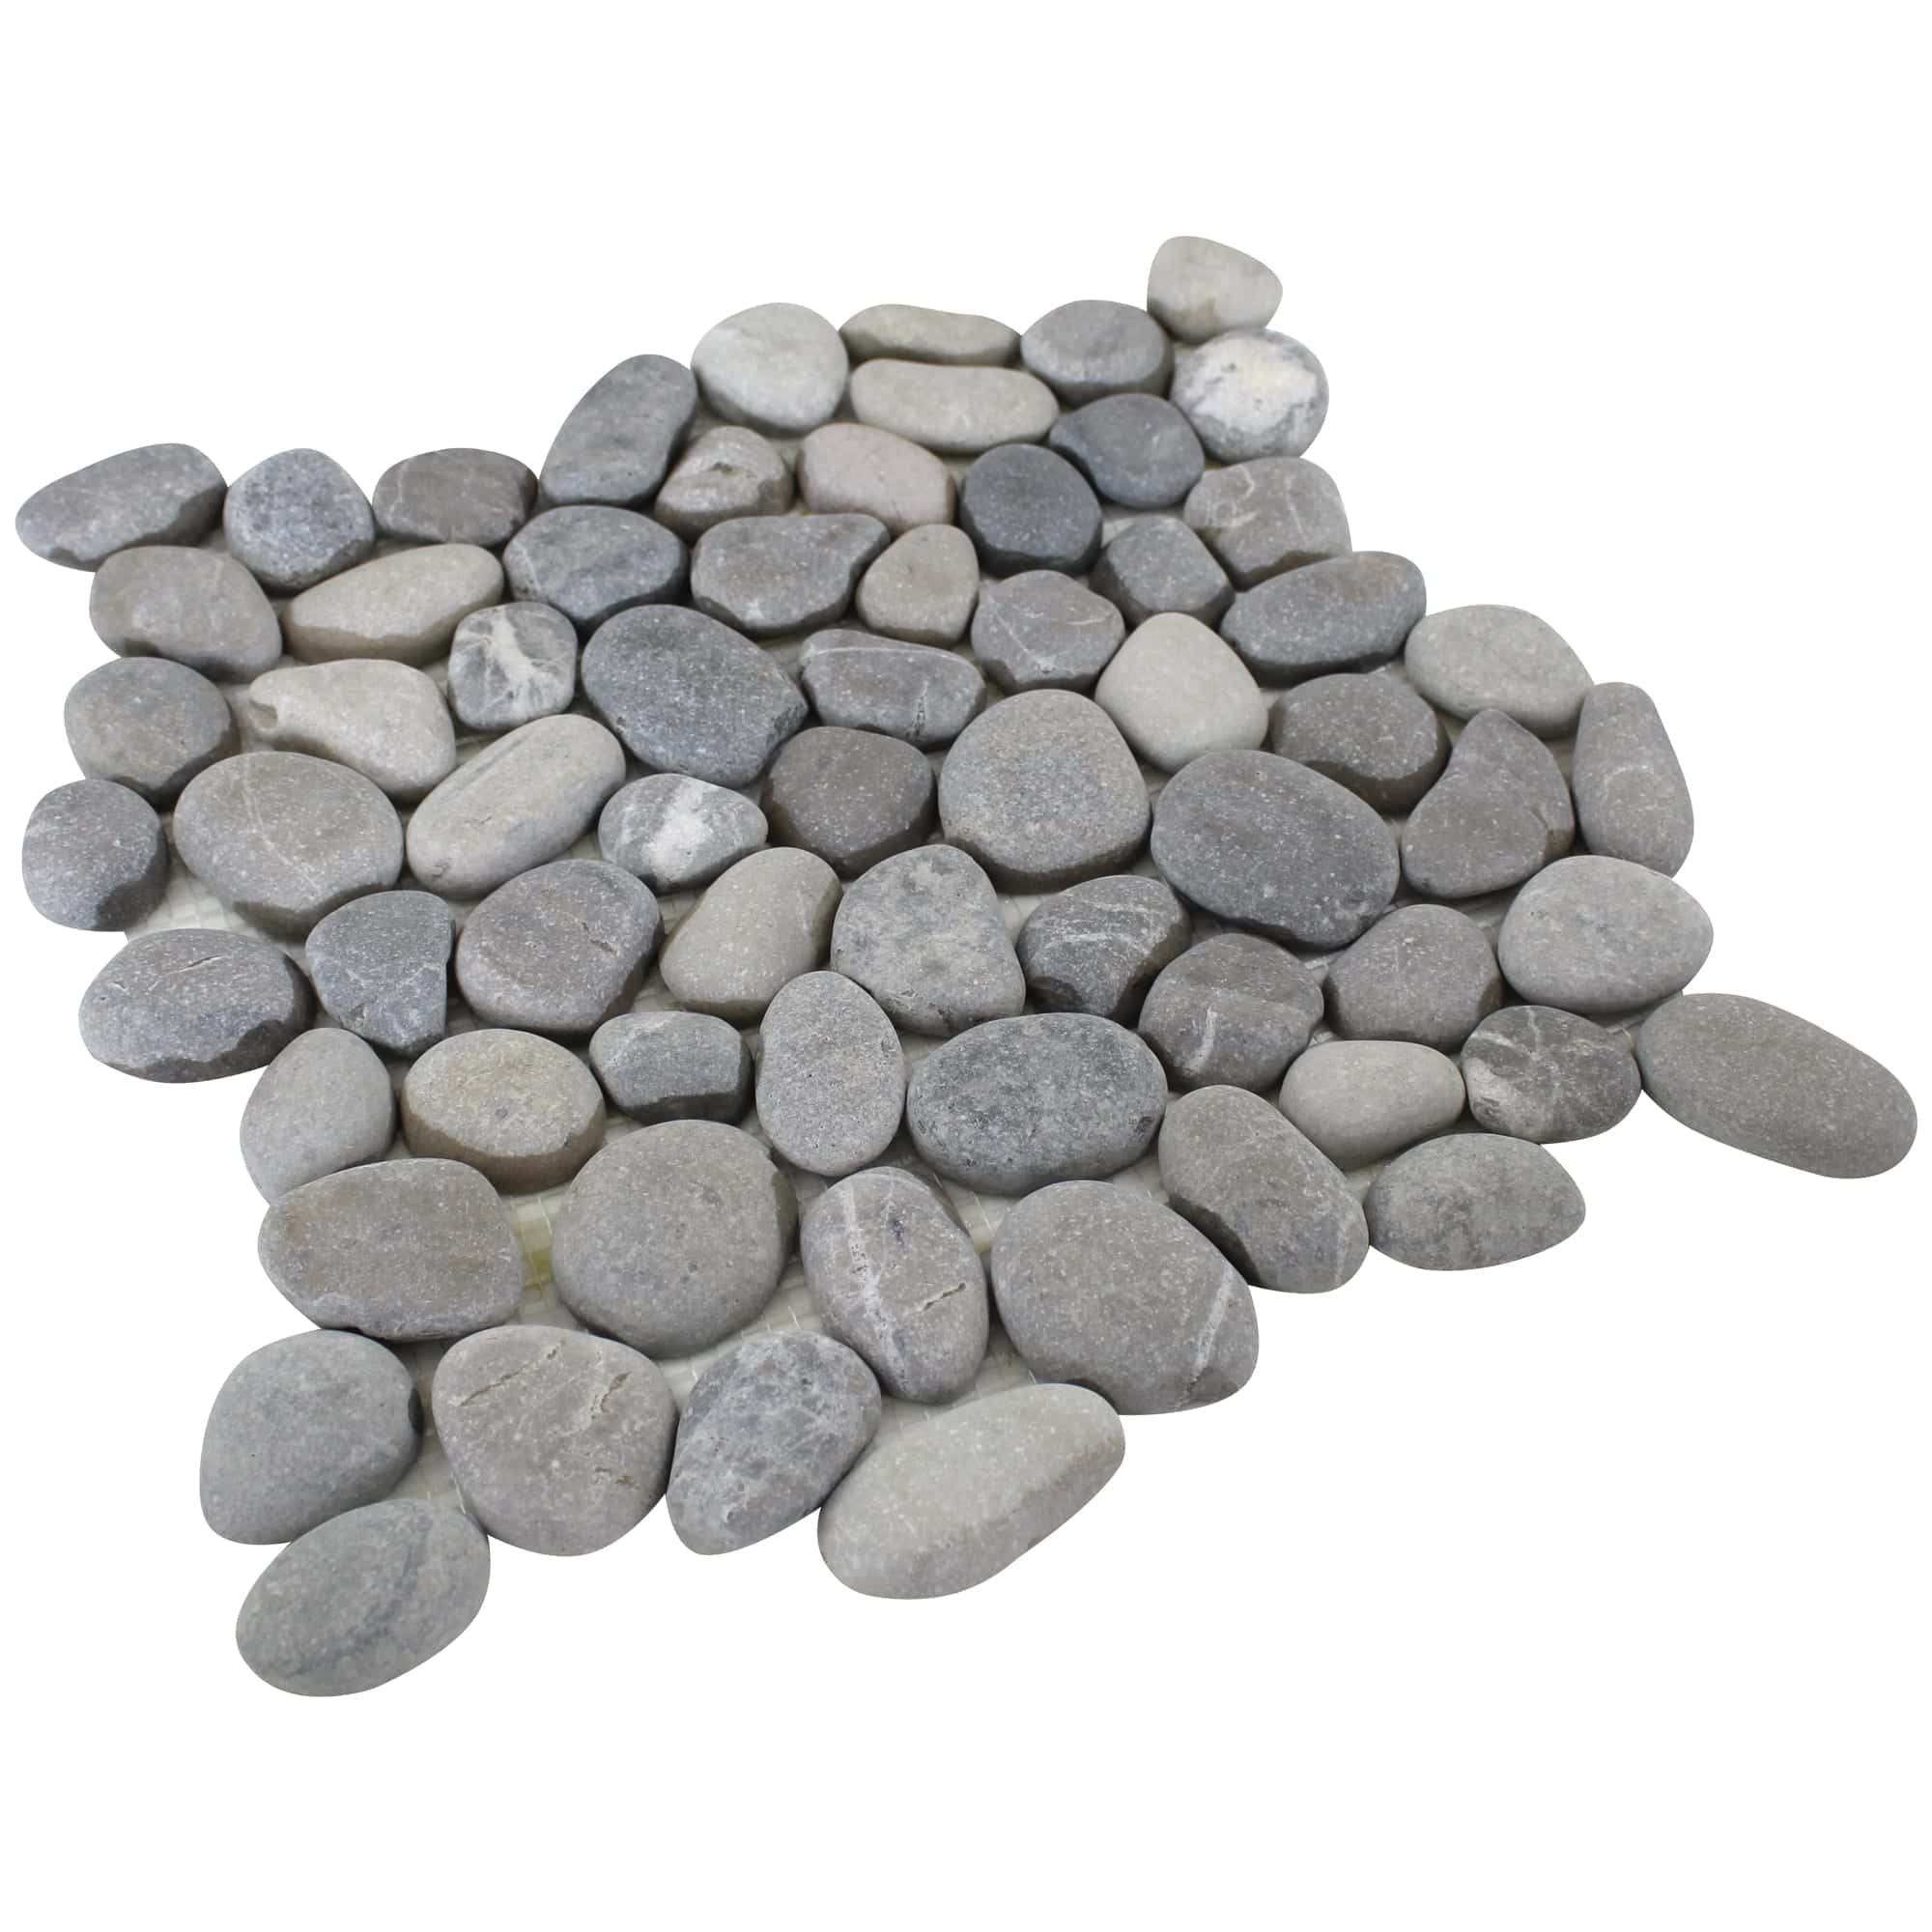 Gray pebble tile